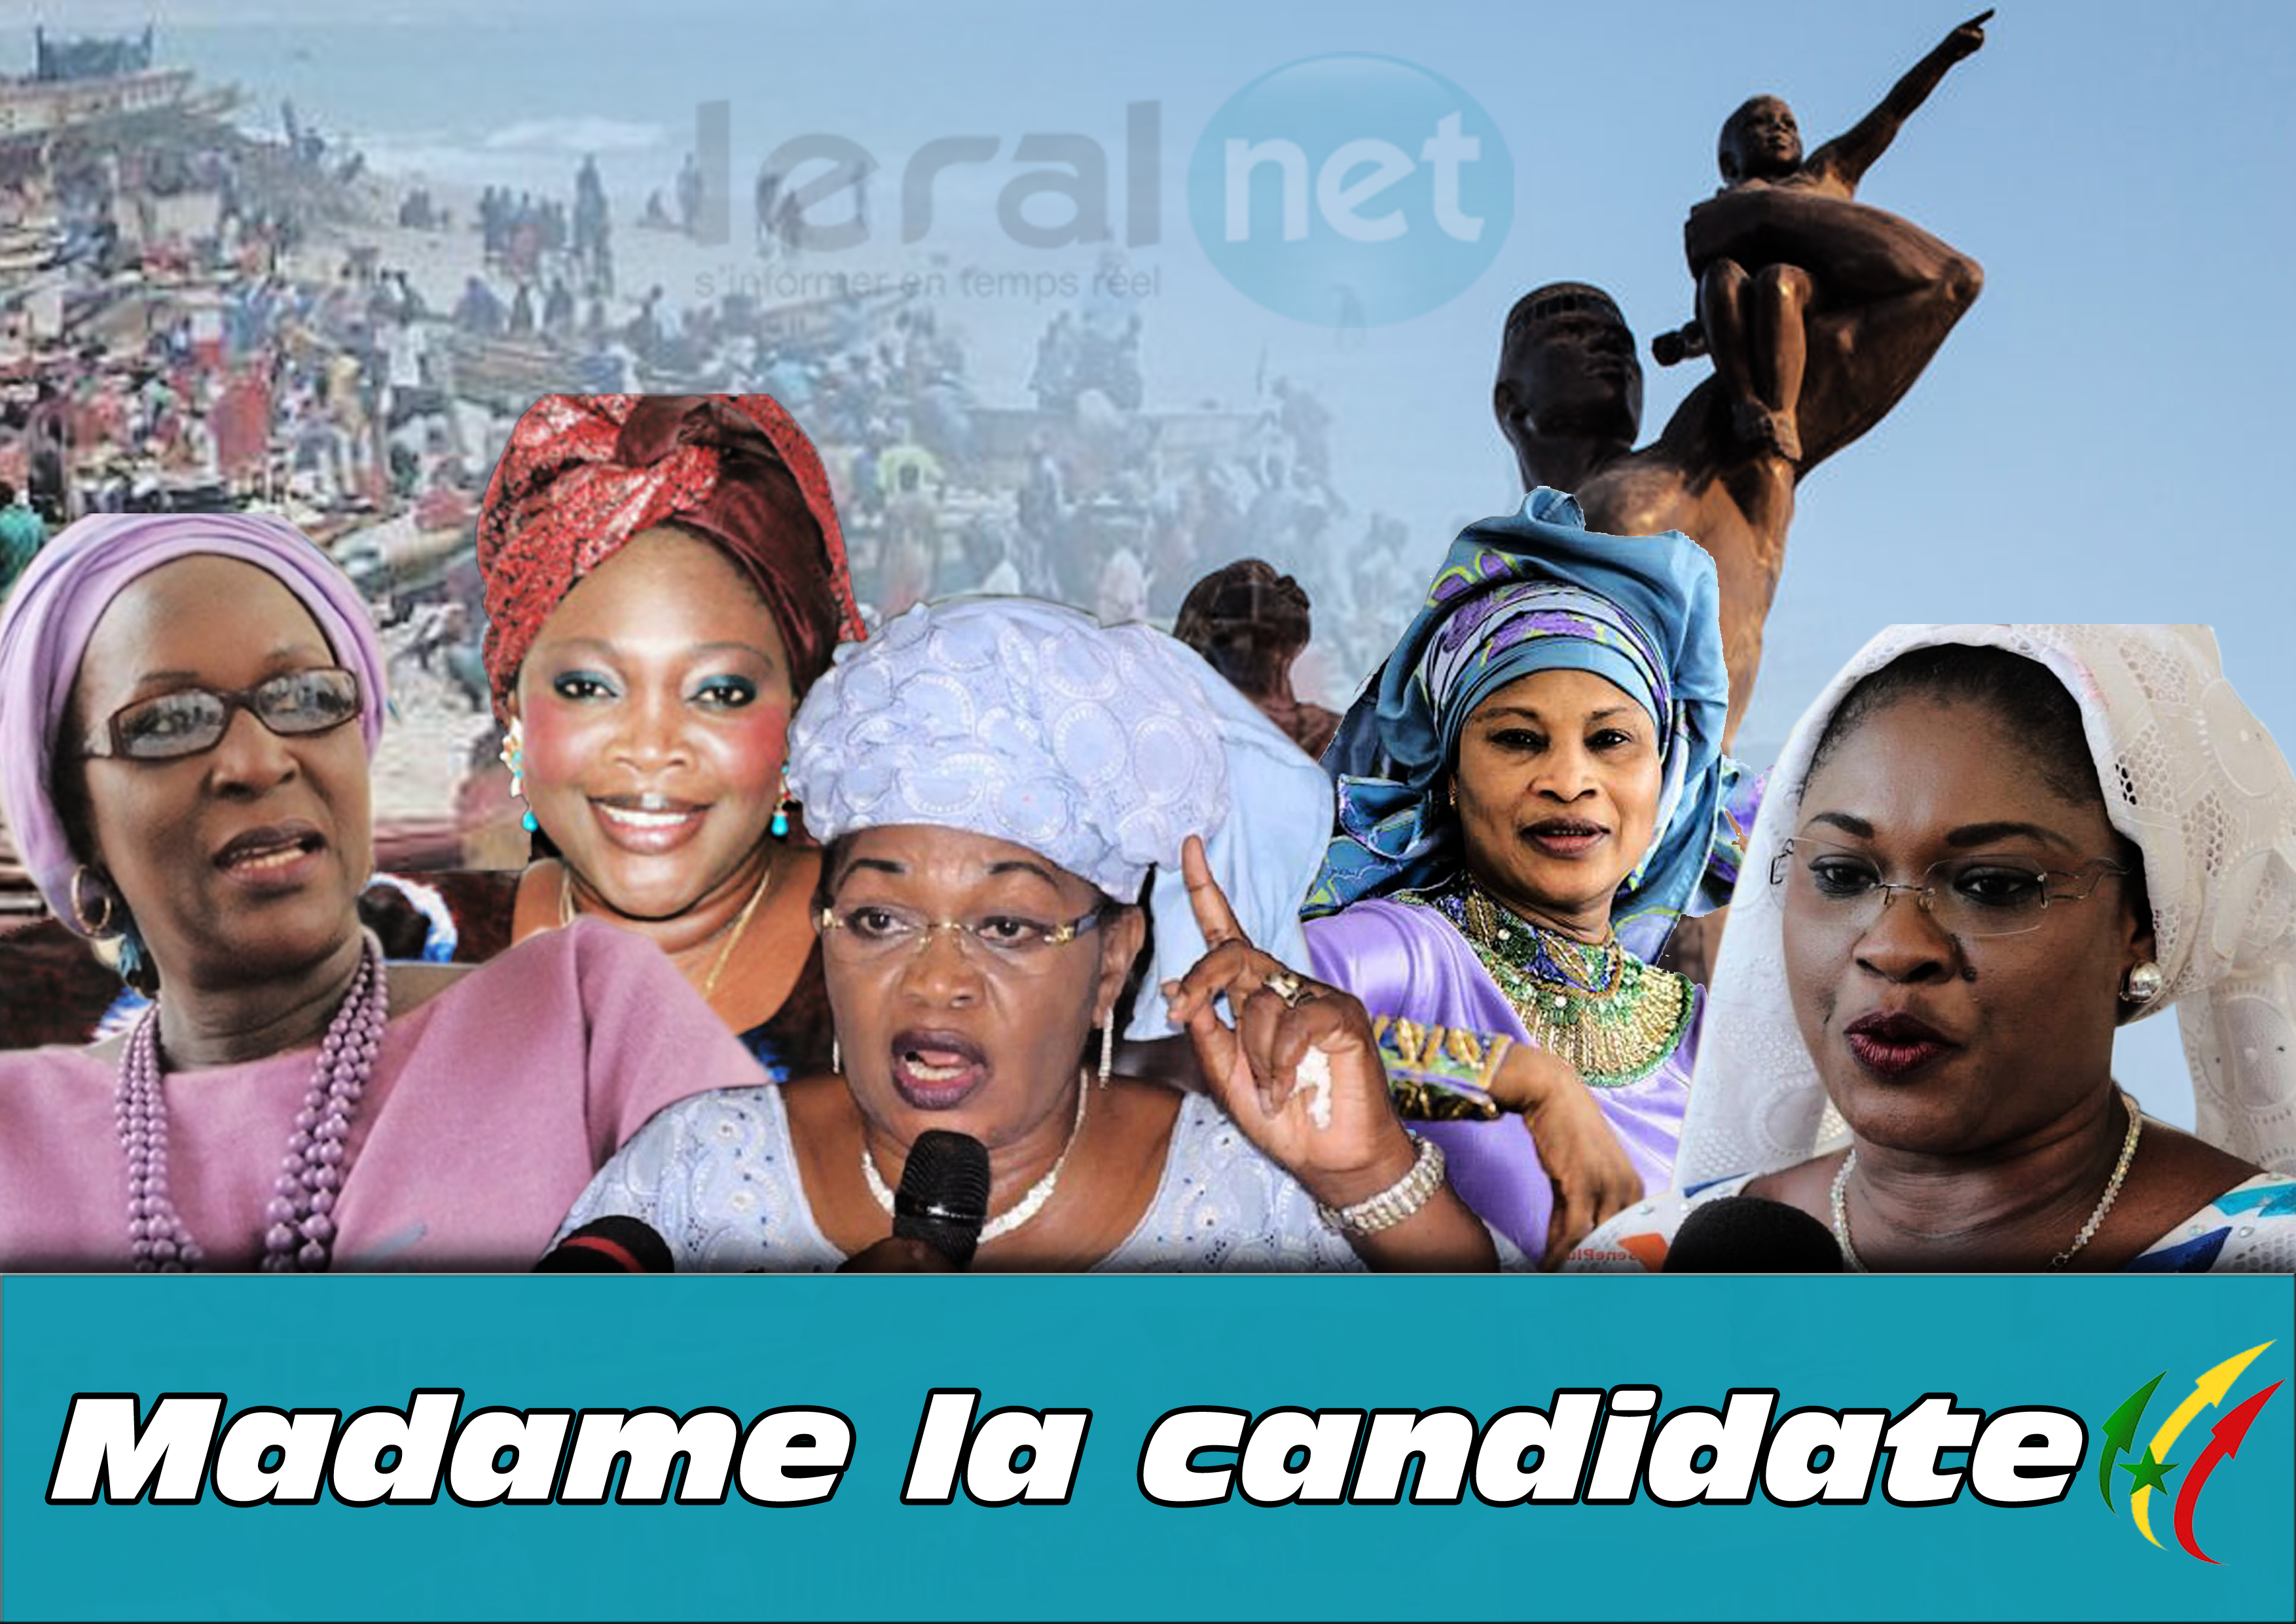 Législatives 2017 : ​Leral.net lance son émission « Madame la candidate », une vitrine réservée à la parité et à l’approche genre  